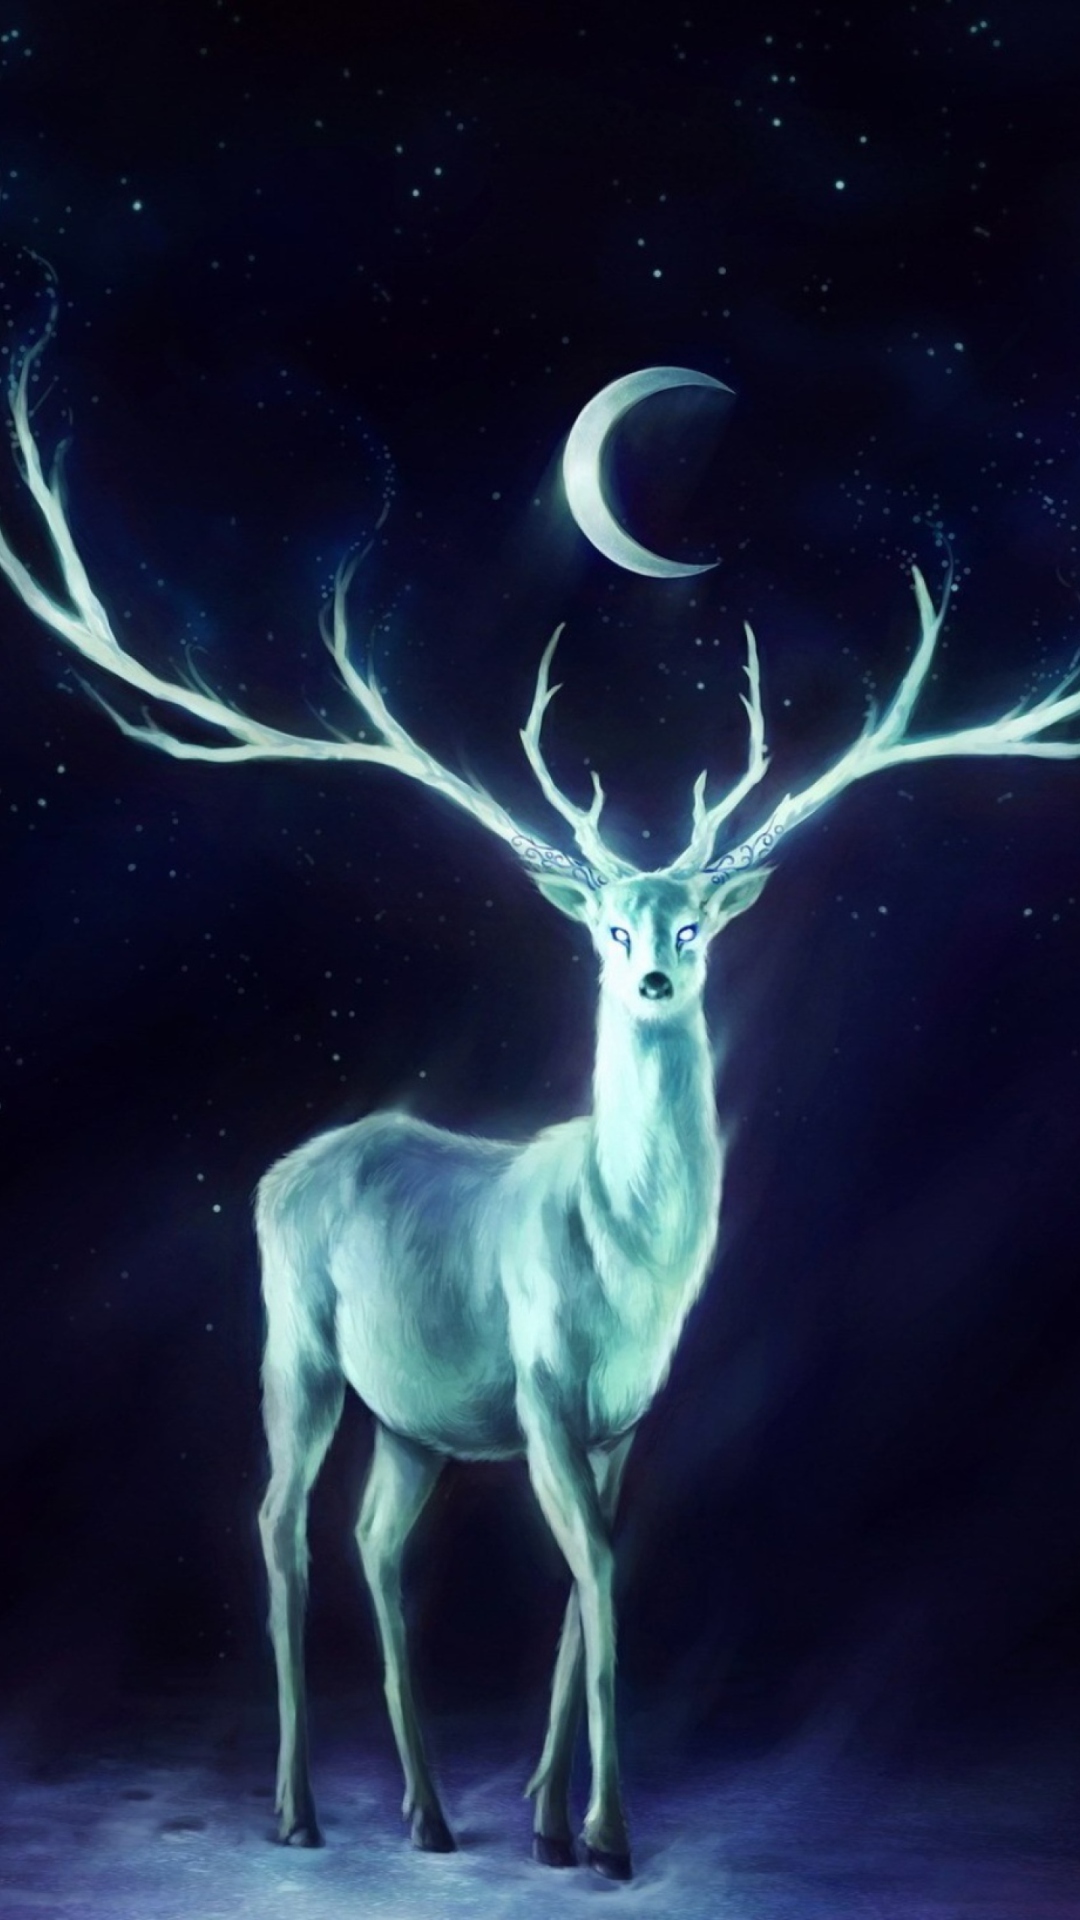 Magic Deer Painting wallpaper 1080x1920